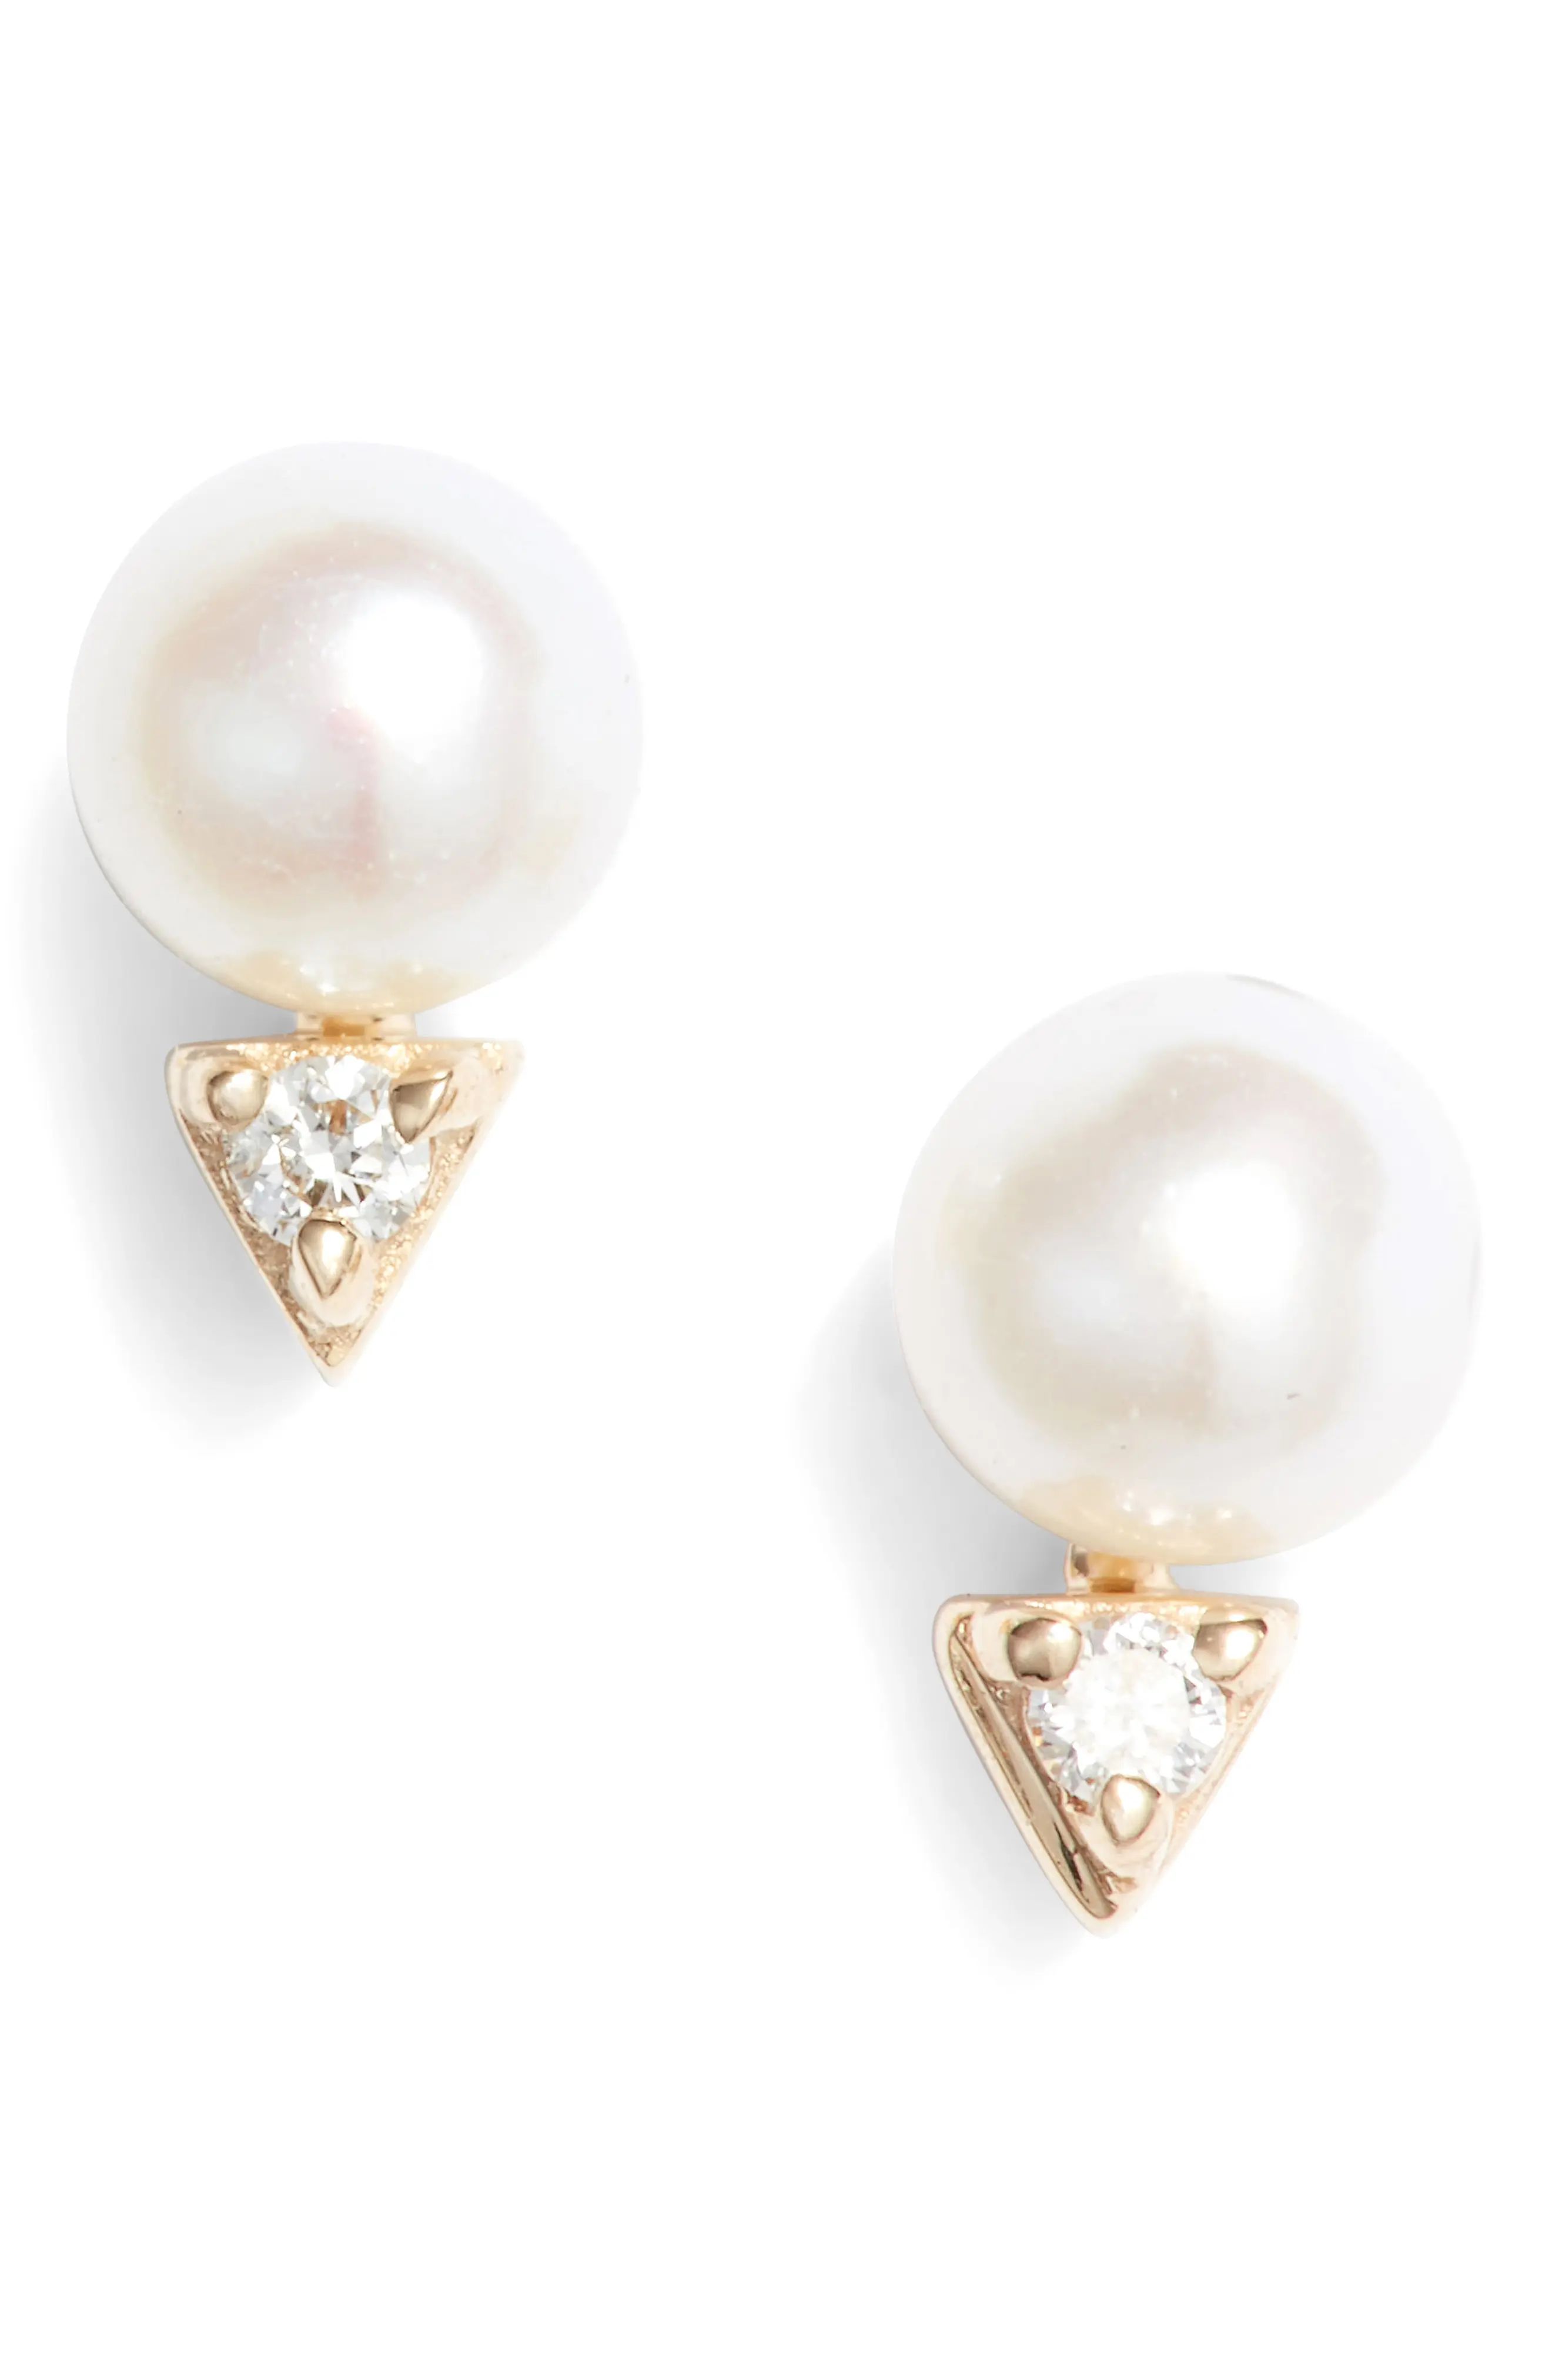 Women's Dana Rebecca Designs Pearl & Diamond Stud Earrings | Nordstrom